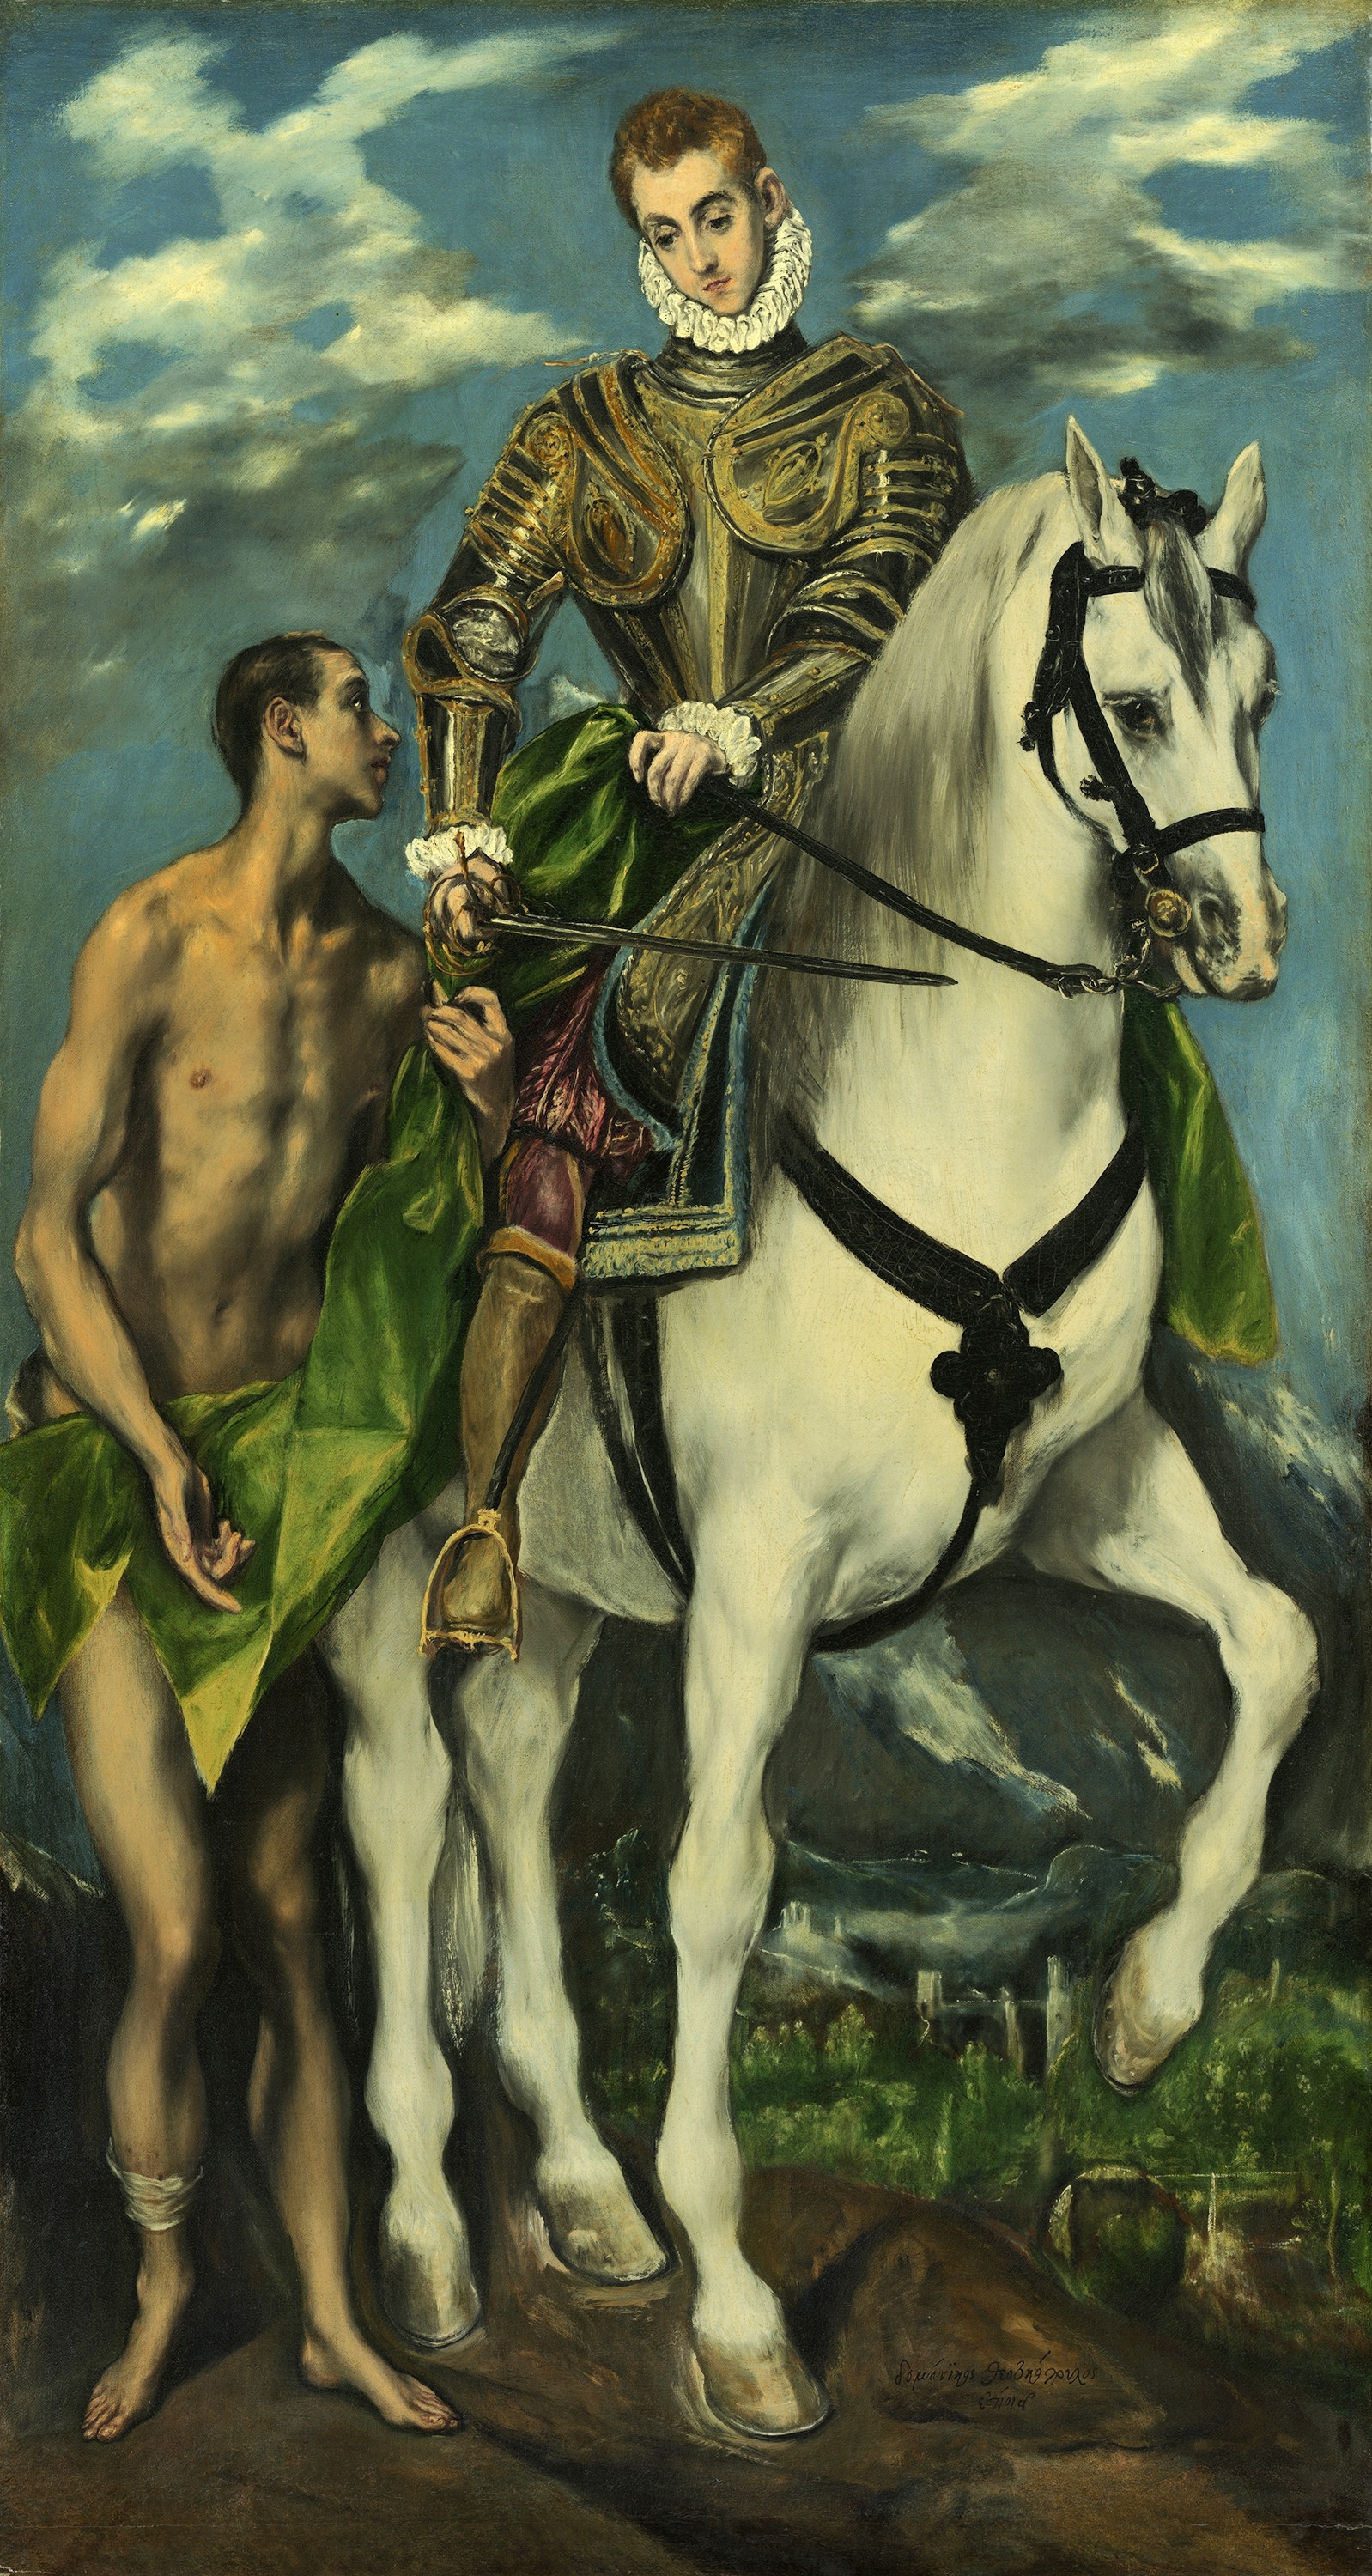 Auf dem Bild ist der heilige Martin auf einem Pferd zu sehen